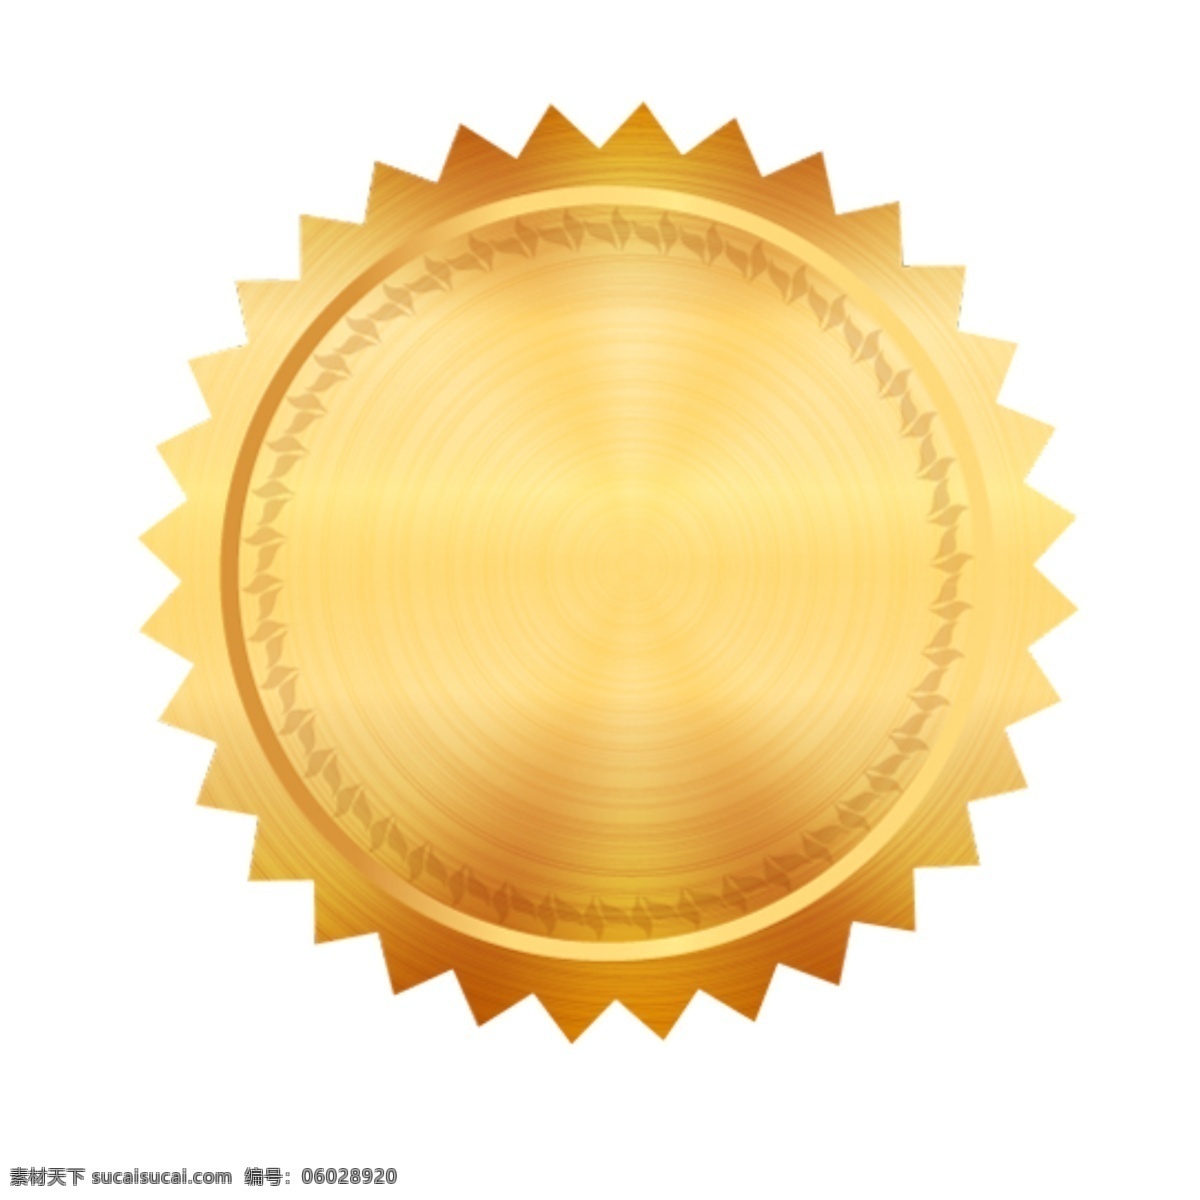 金色 黄色 圆形图 齿轮状 设计素材 常用素材